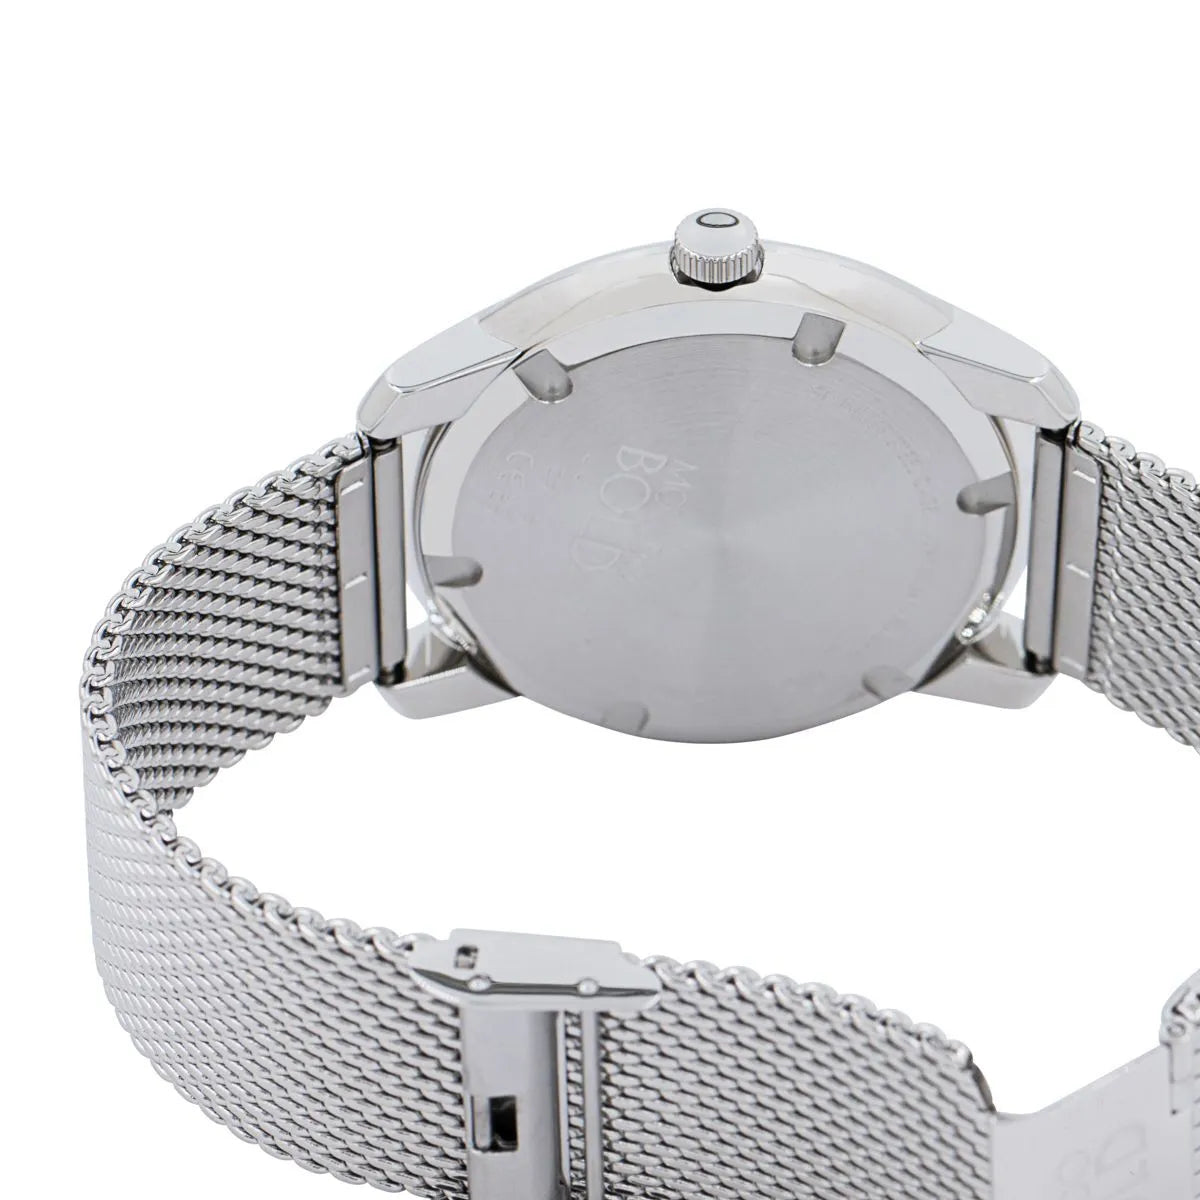 Movado Bold Silver Dial Silver Mesh Bracelet Watch For Men - 3600260